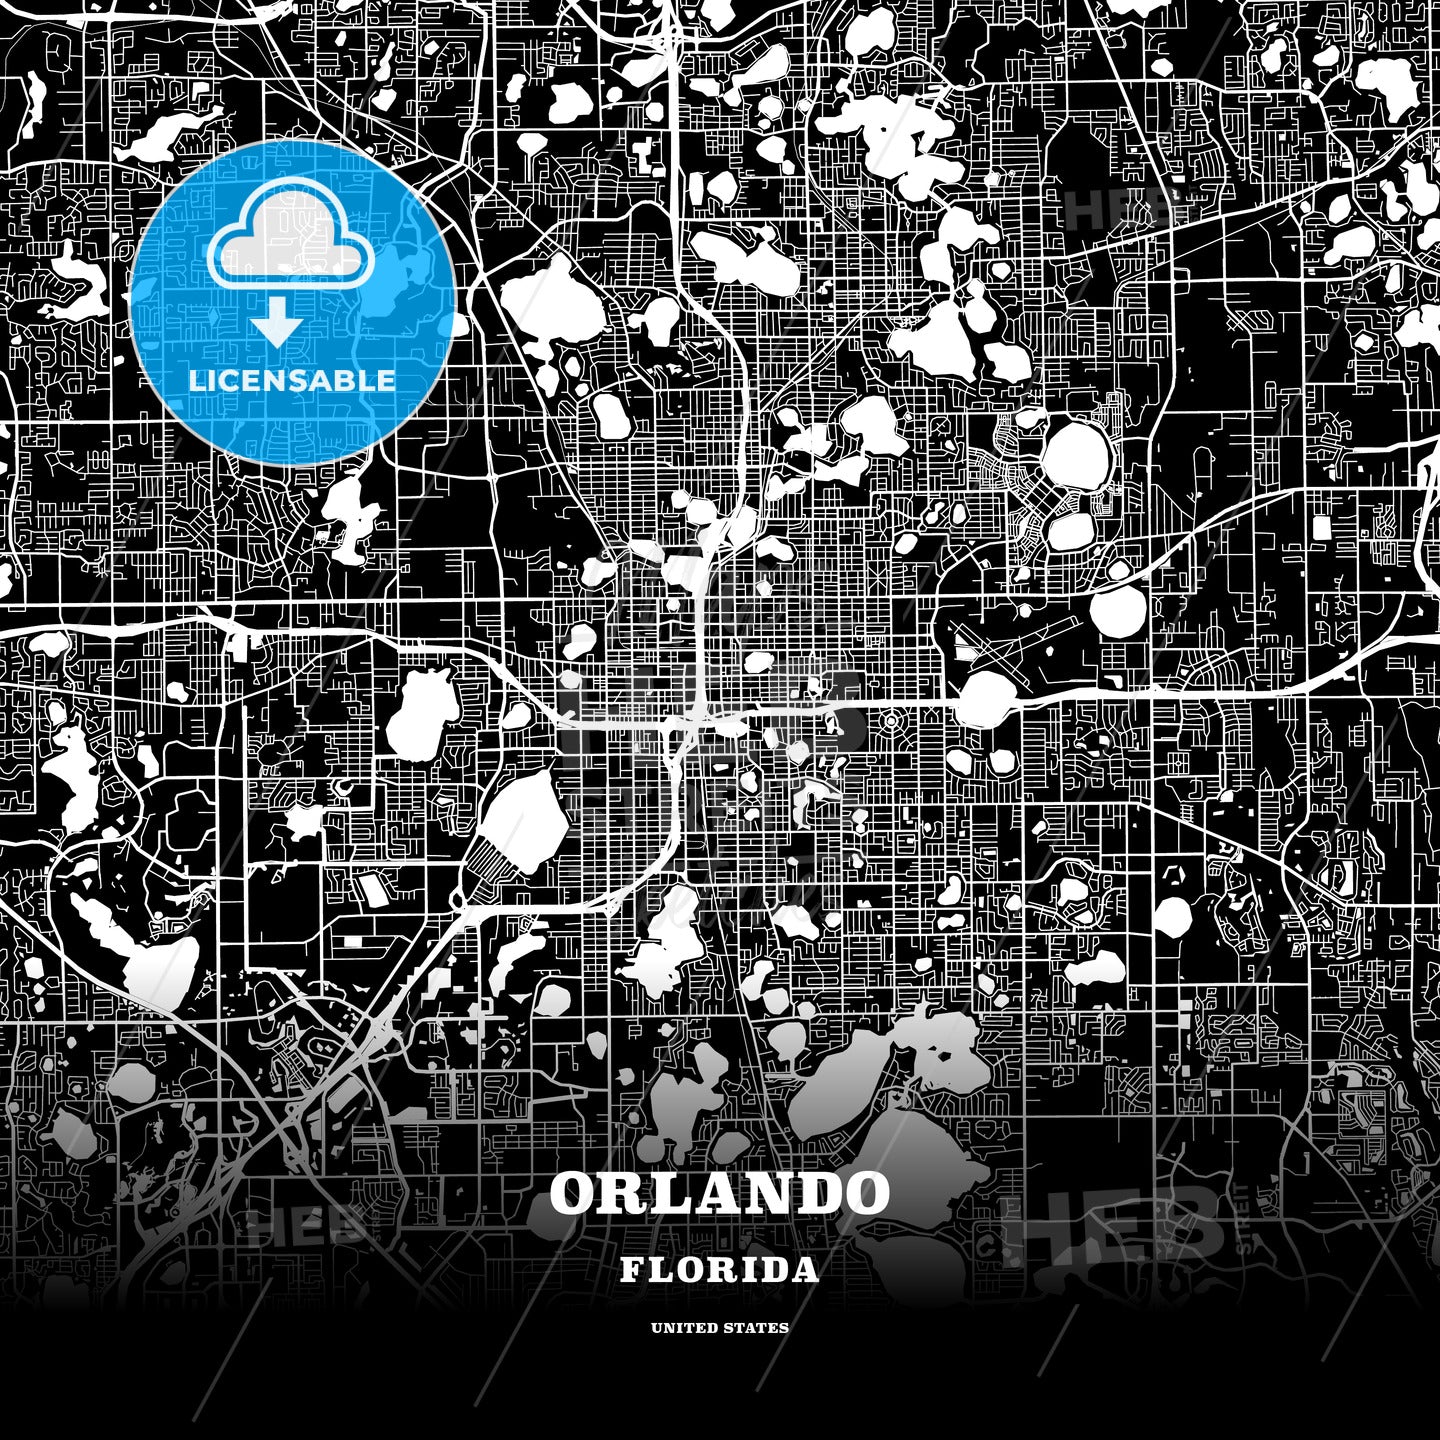 Orlando, Florida, USA map